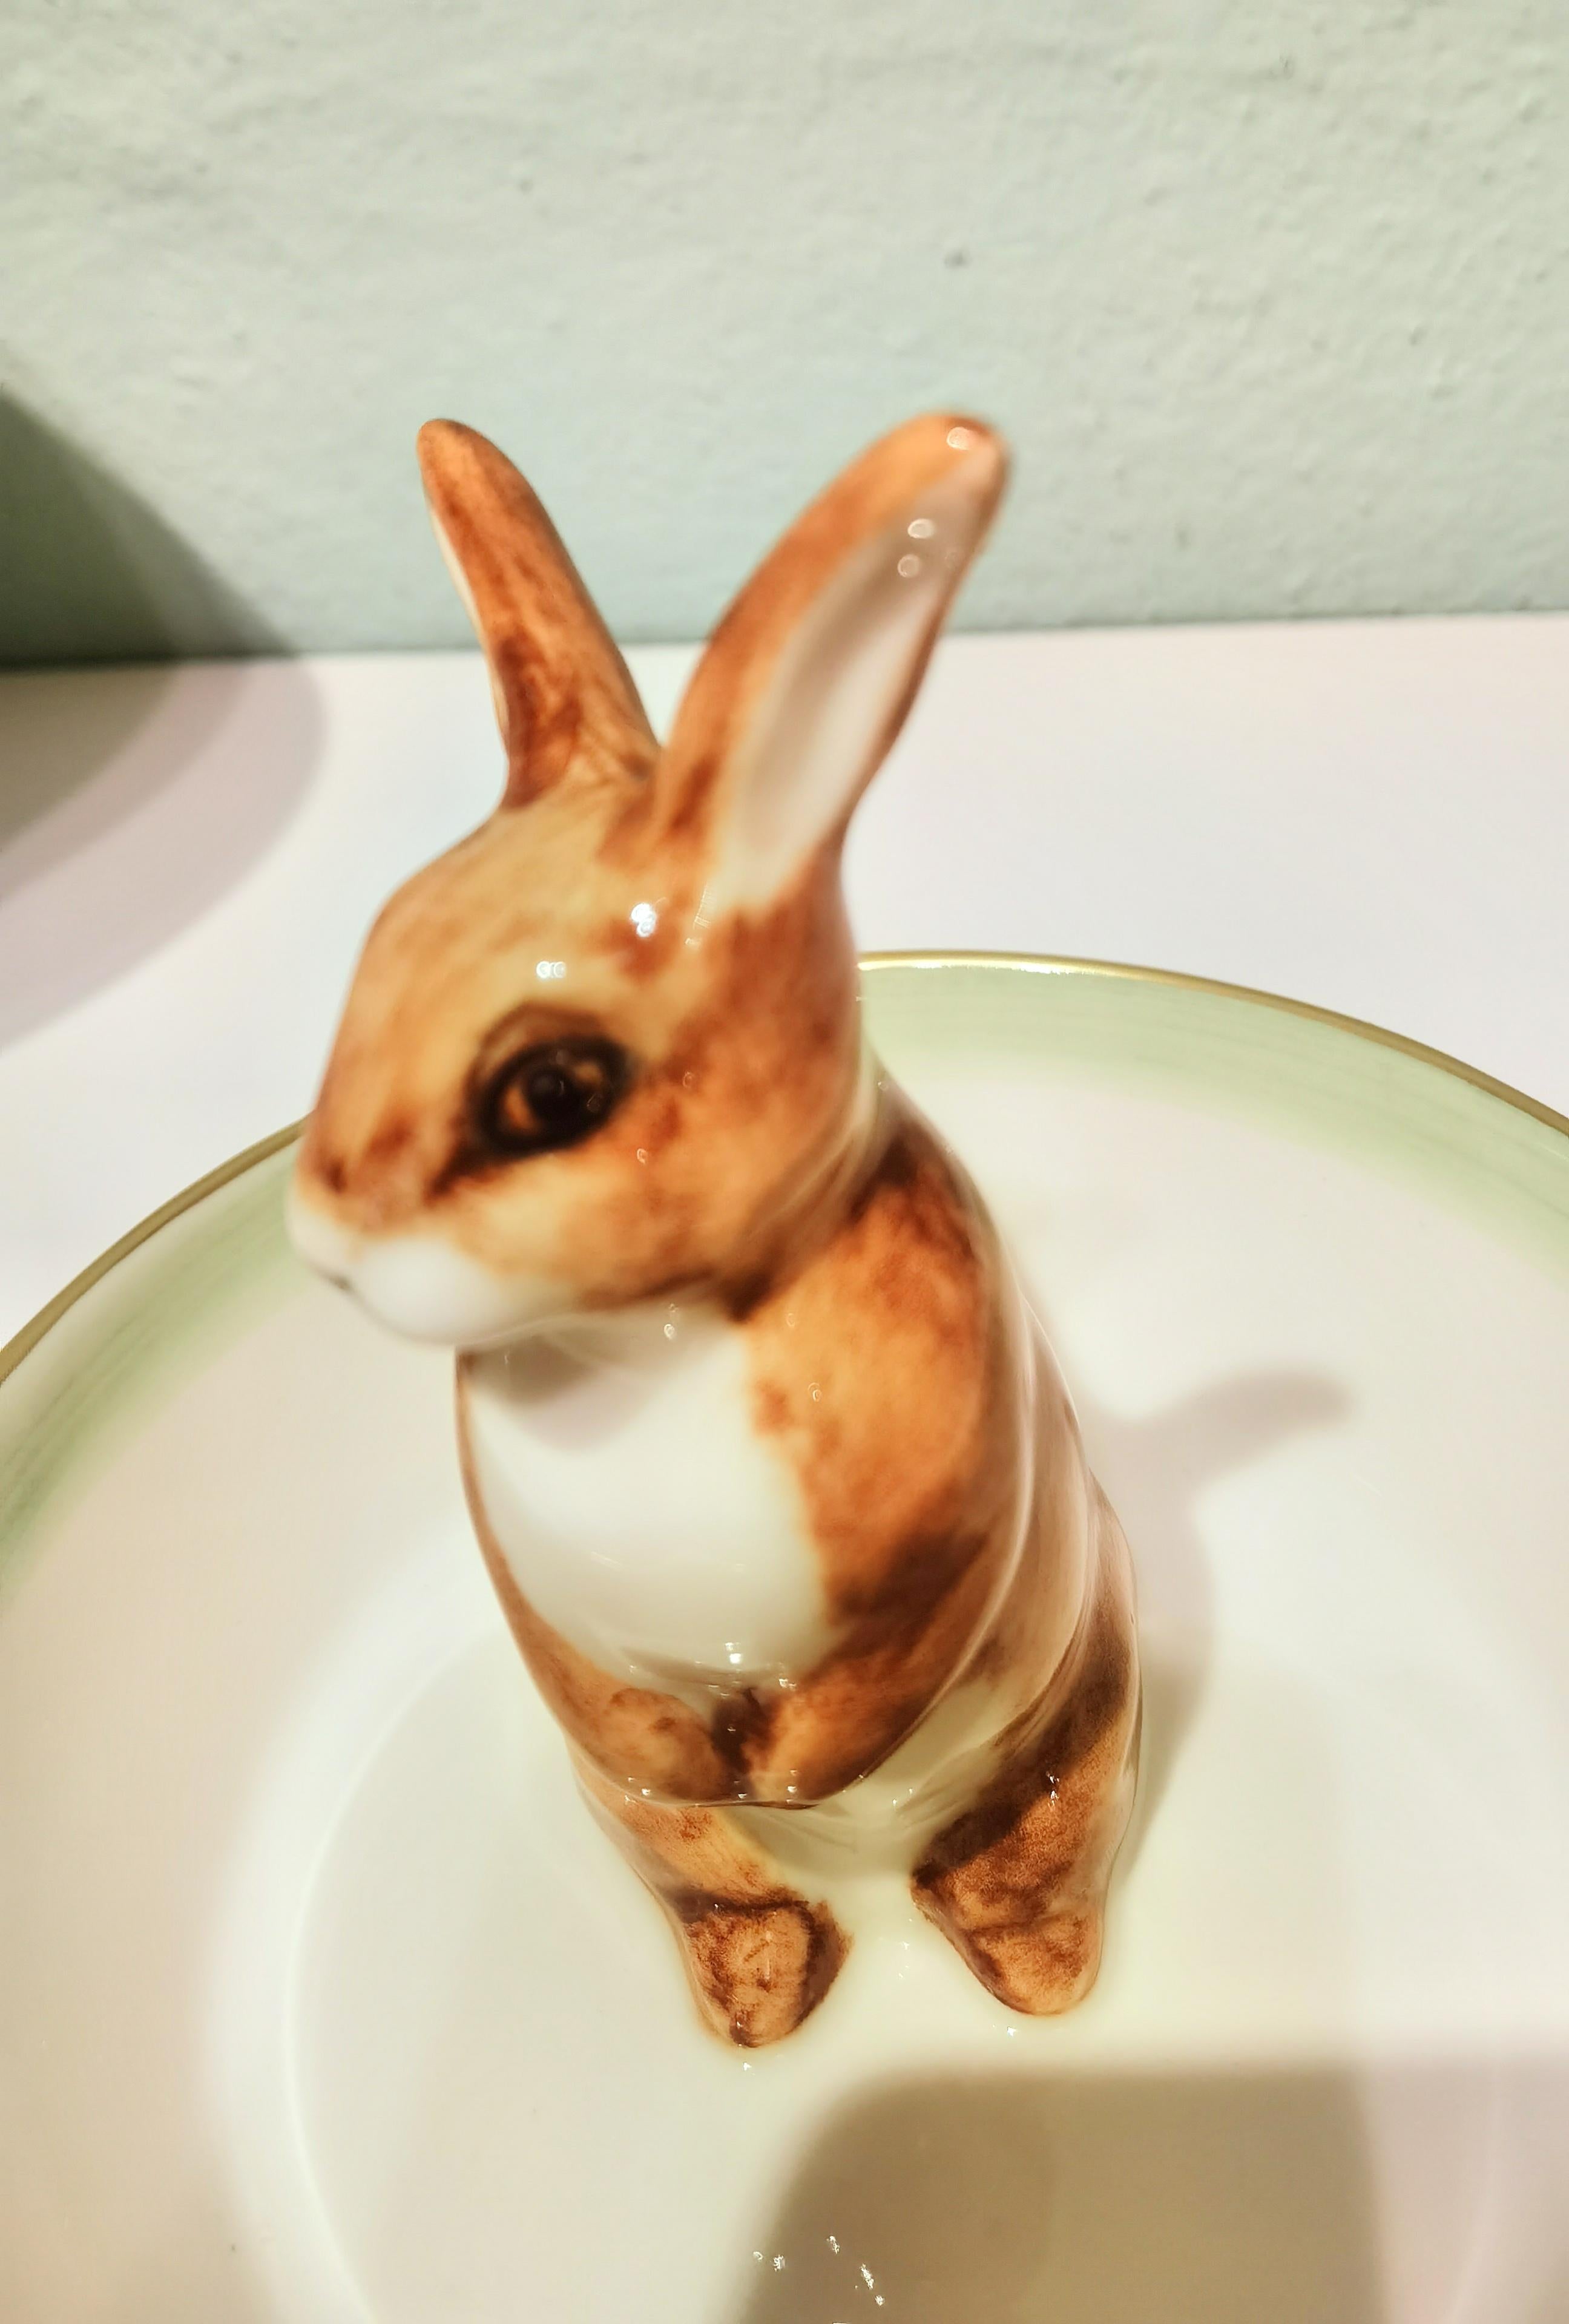 Ce plat à pâtisserie en porcelaine entièrement fait à la main est peint à la main avec un lapin peint en brun et blanc assis au milieu du plat. Bordé à la main d'une ligne verte et fine en or 24 carats. Fabriqué à la main en Bavière / Allemagne.
À